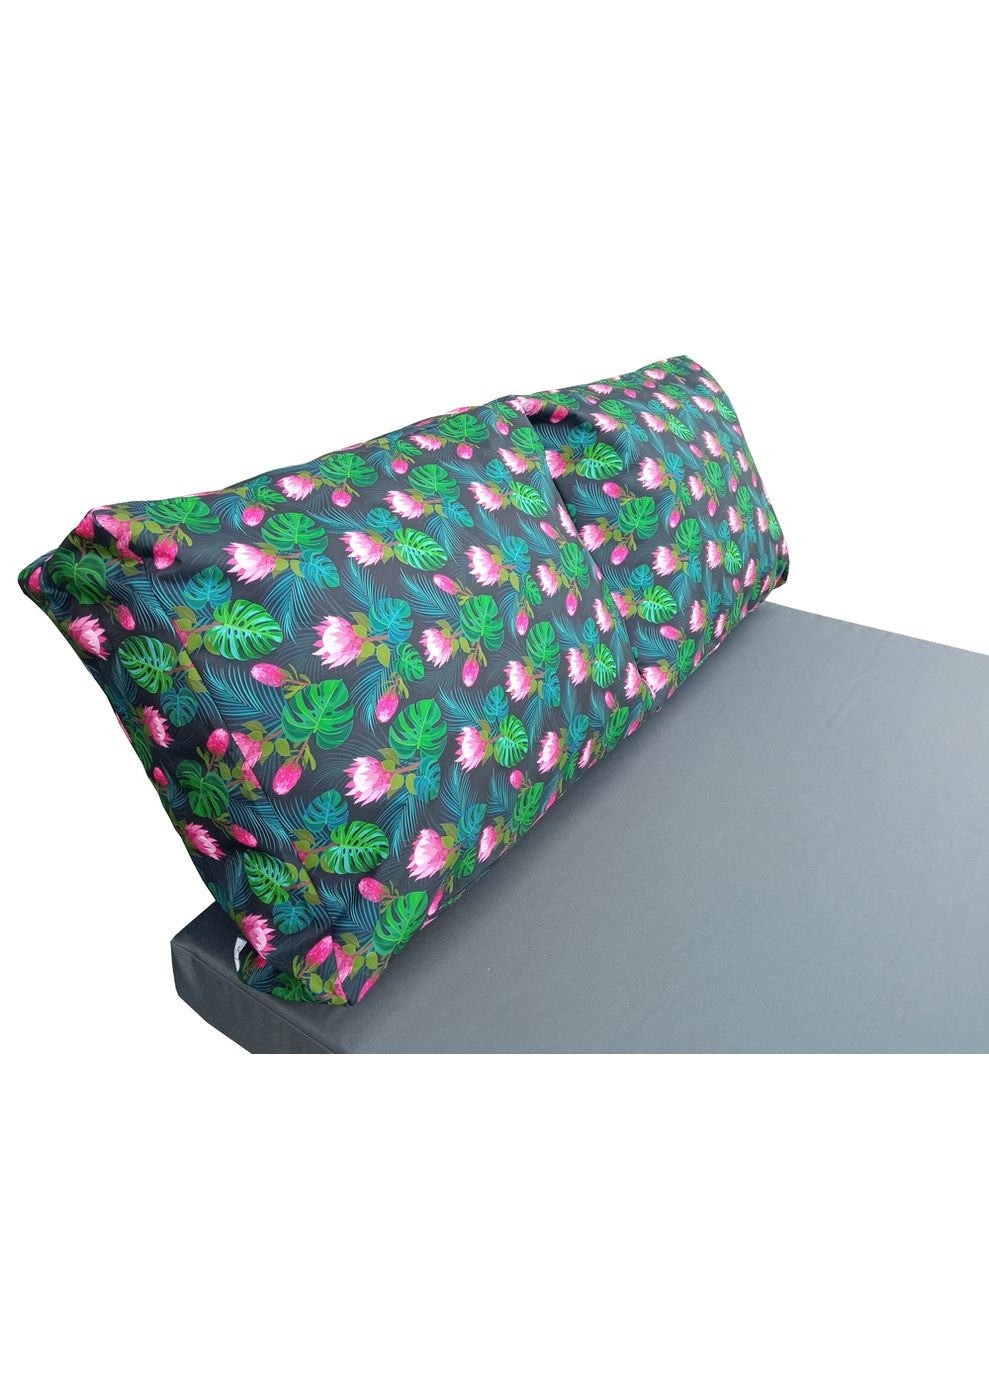 Комплект водовідштовхуючих подушок для палетдивану WATERLILY 120x80x10/120x60x20 eGarden (279784303)